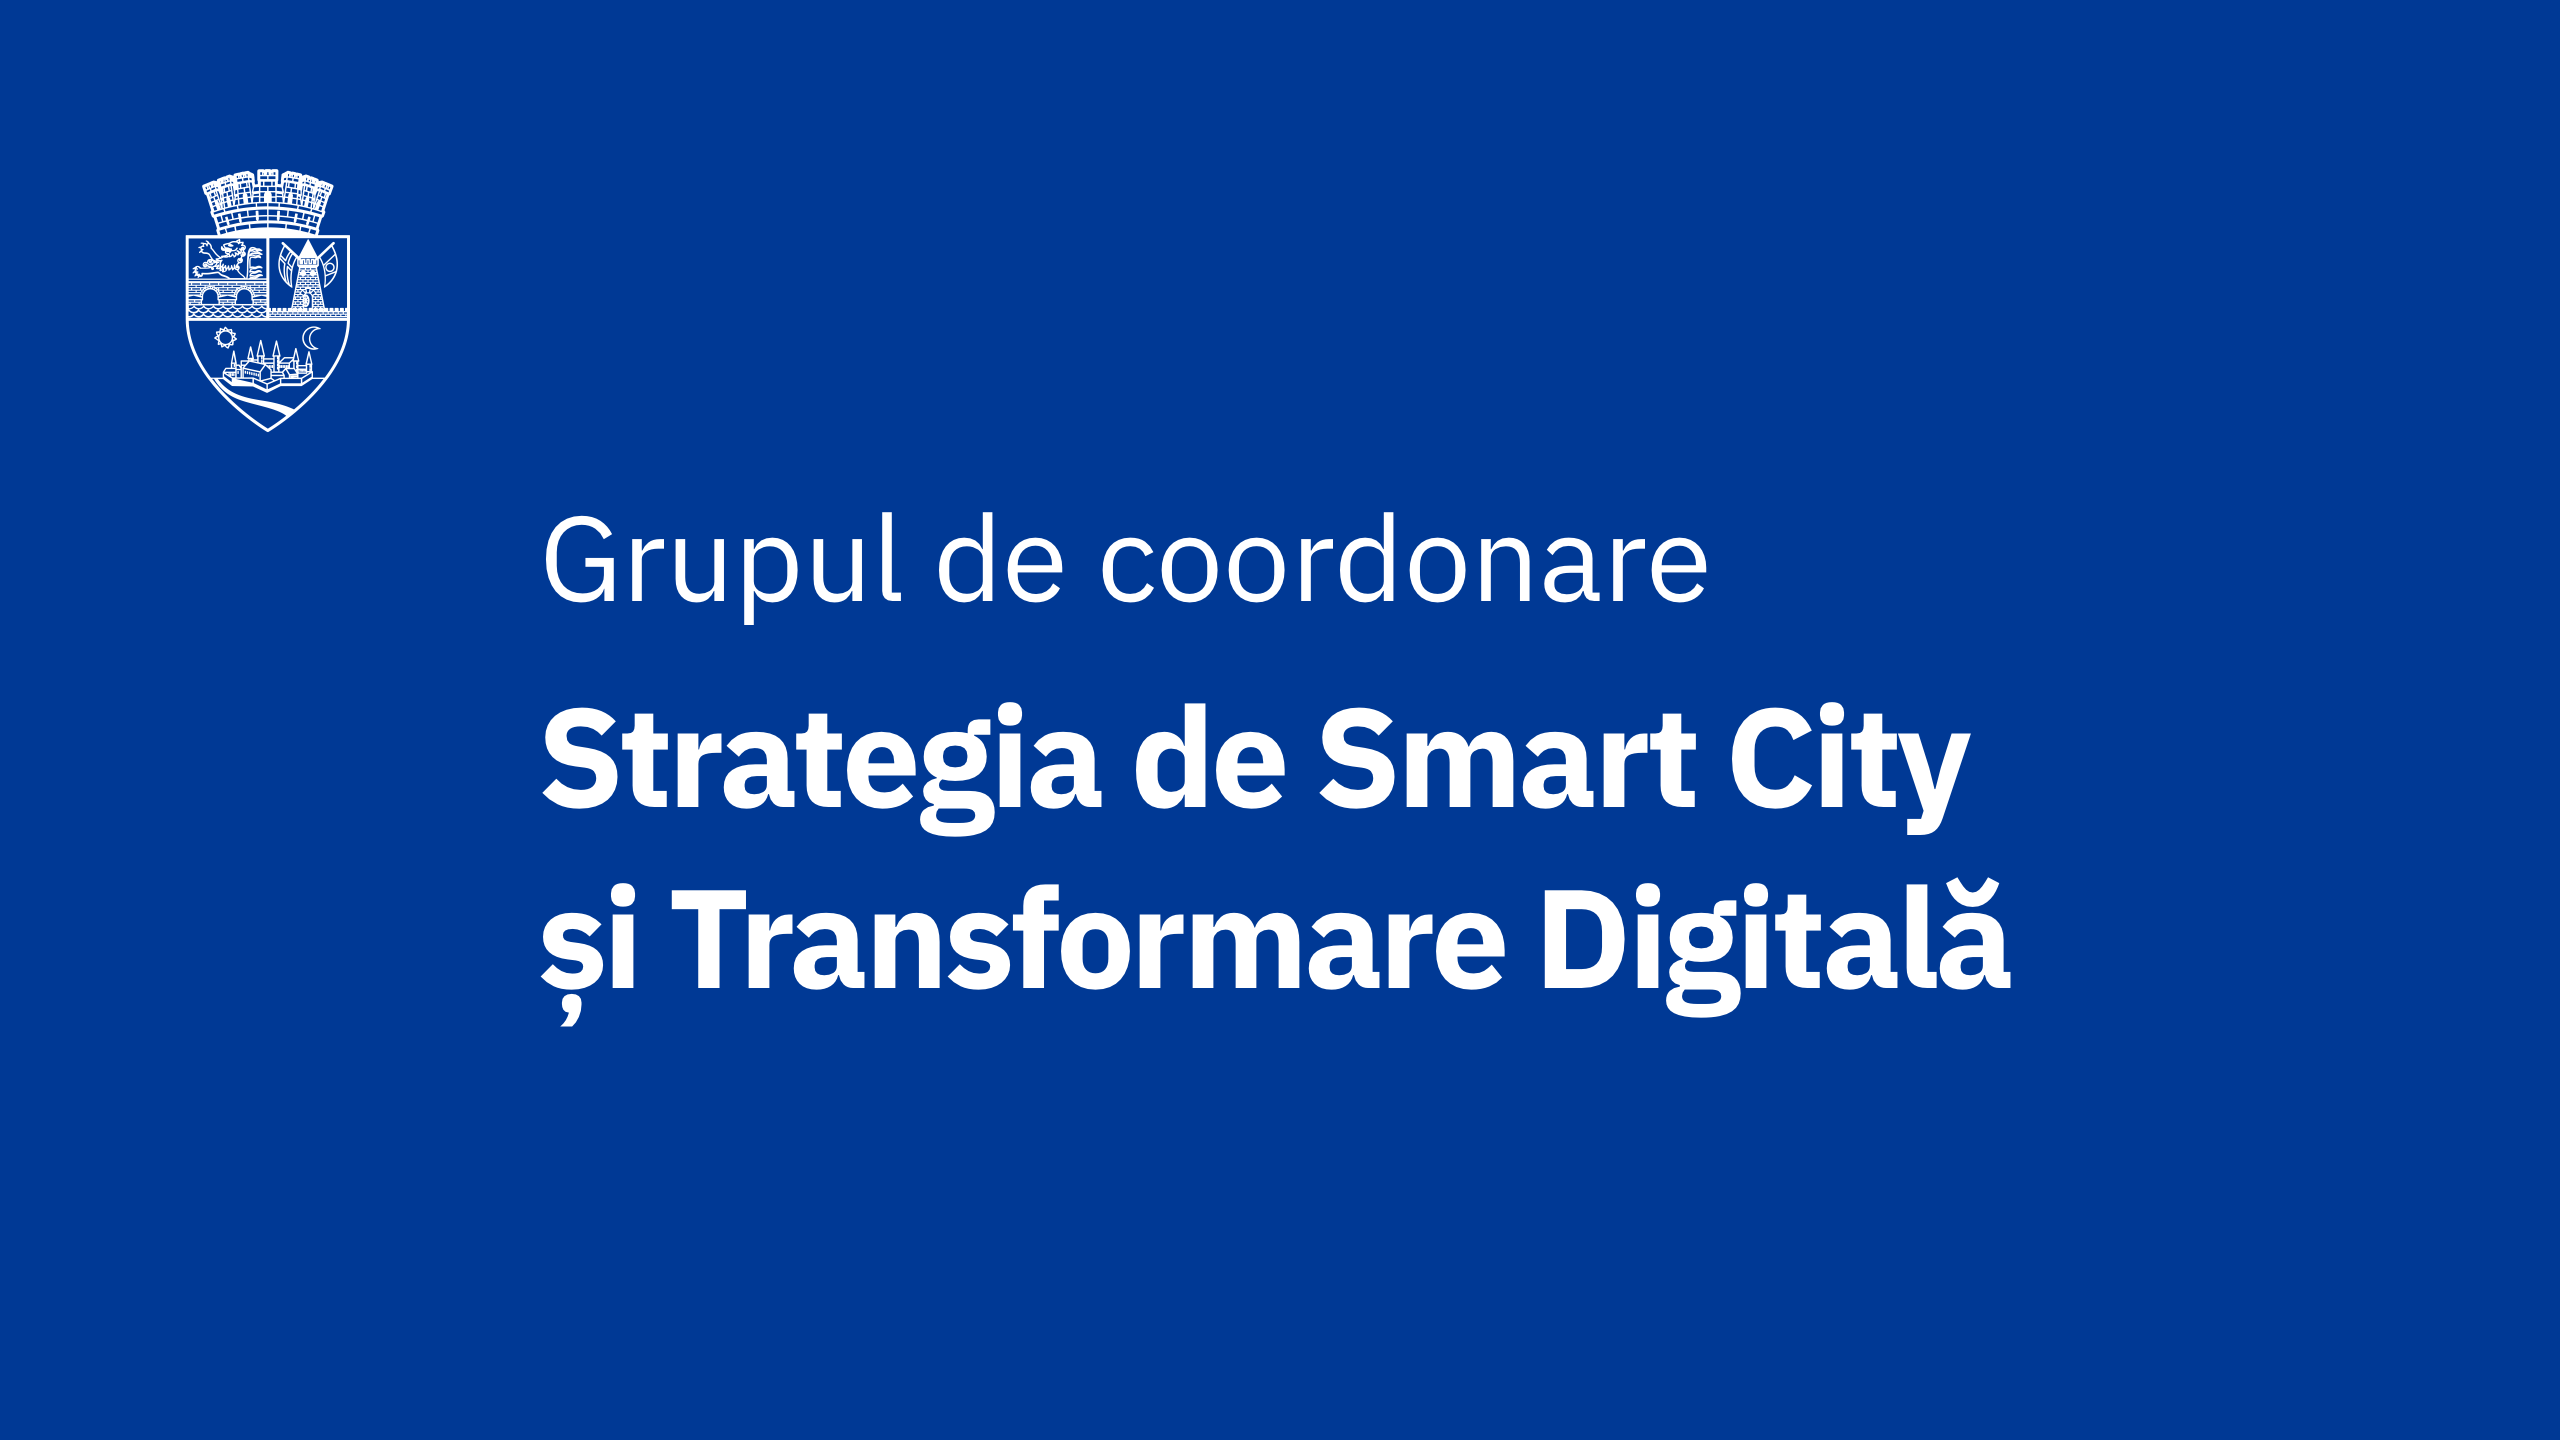 Grupul de Coordonare al procesului de co-design a Strategiei Smart City și Transformare Digitală Timișoara 2021-2027